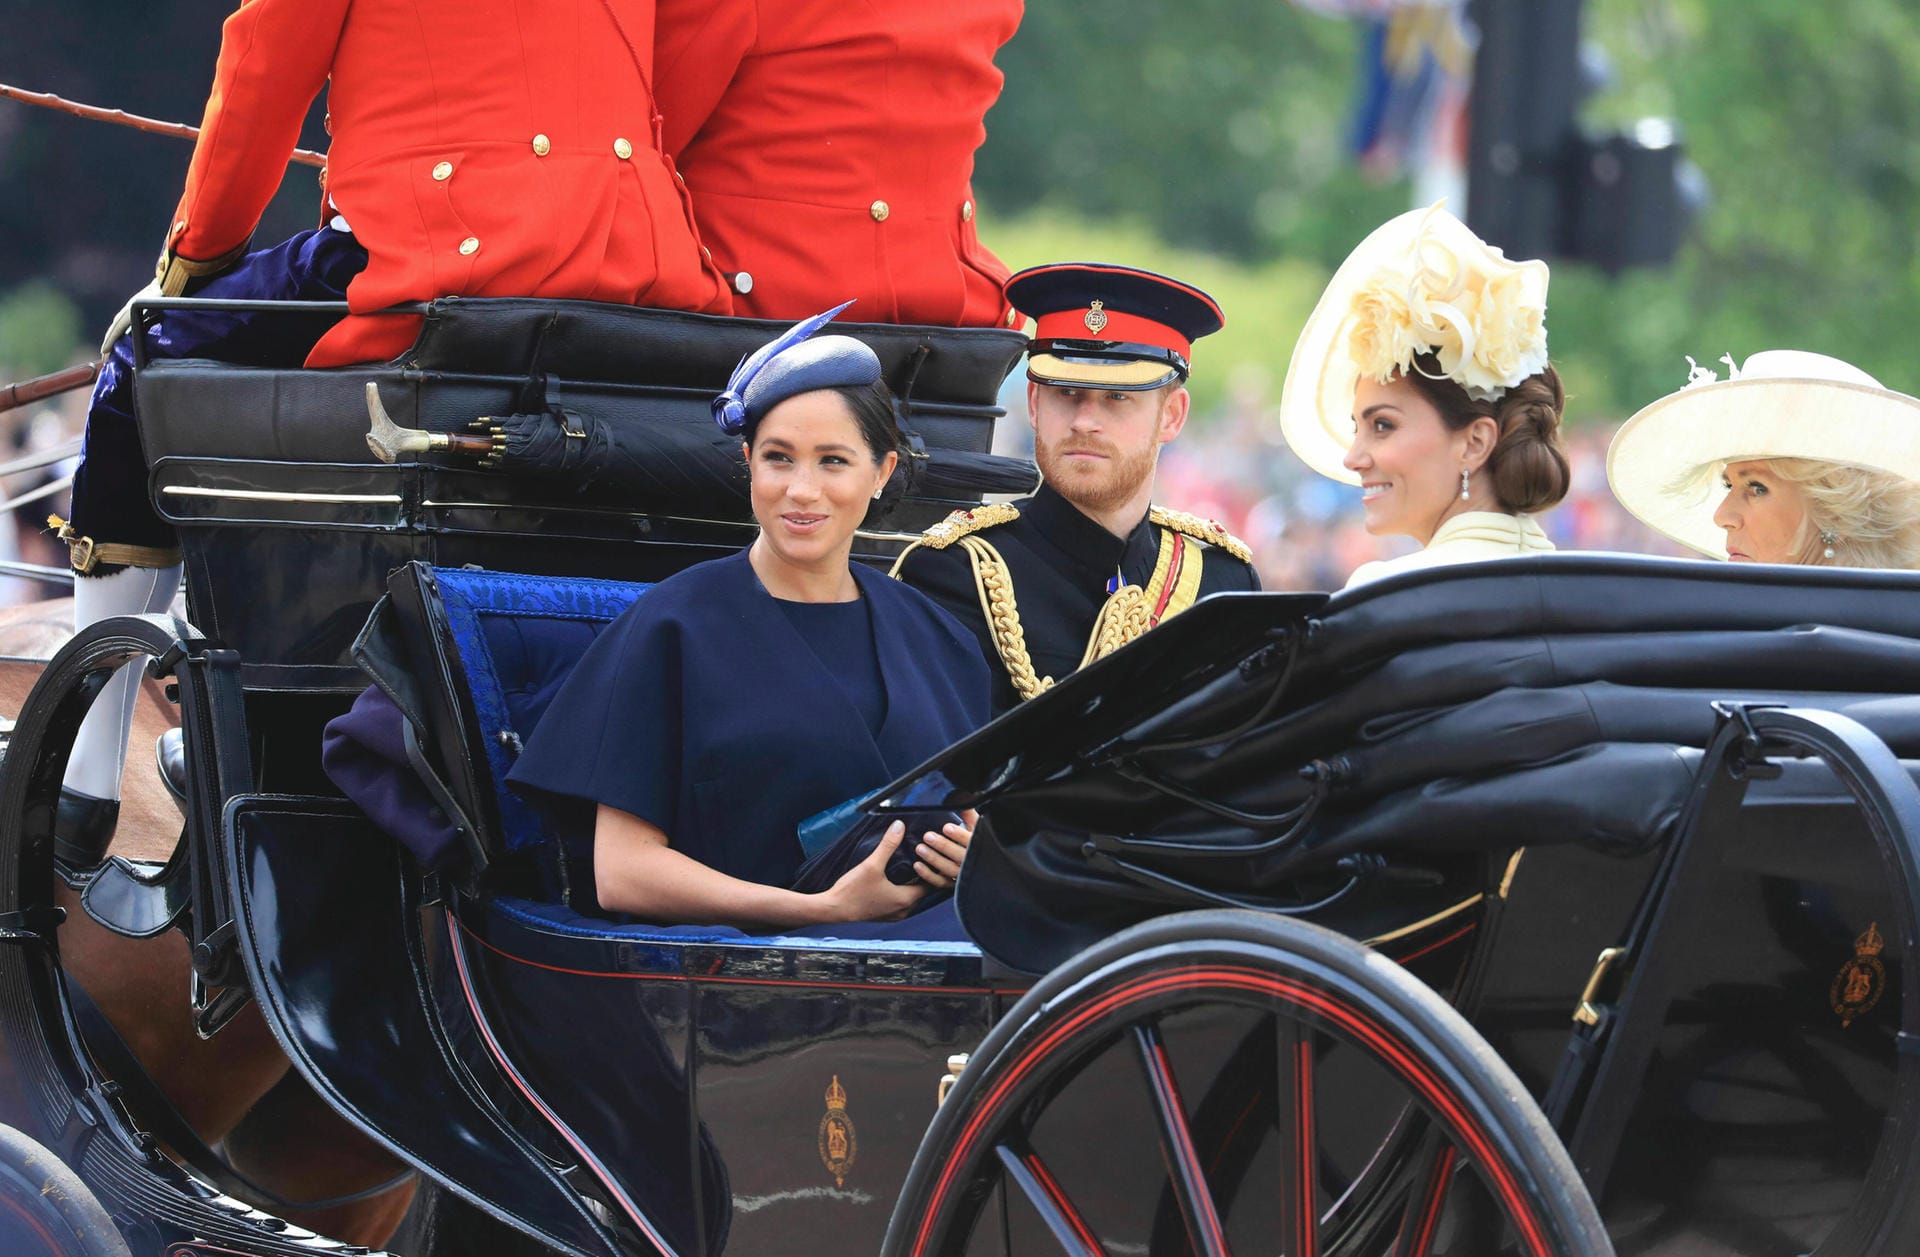 Herzogin Meghan, Prinz Harry, Herzogin Kate und Herzogin Camilla verfolgen das Spektakel interessiert.